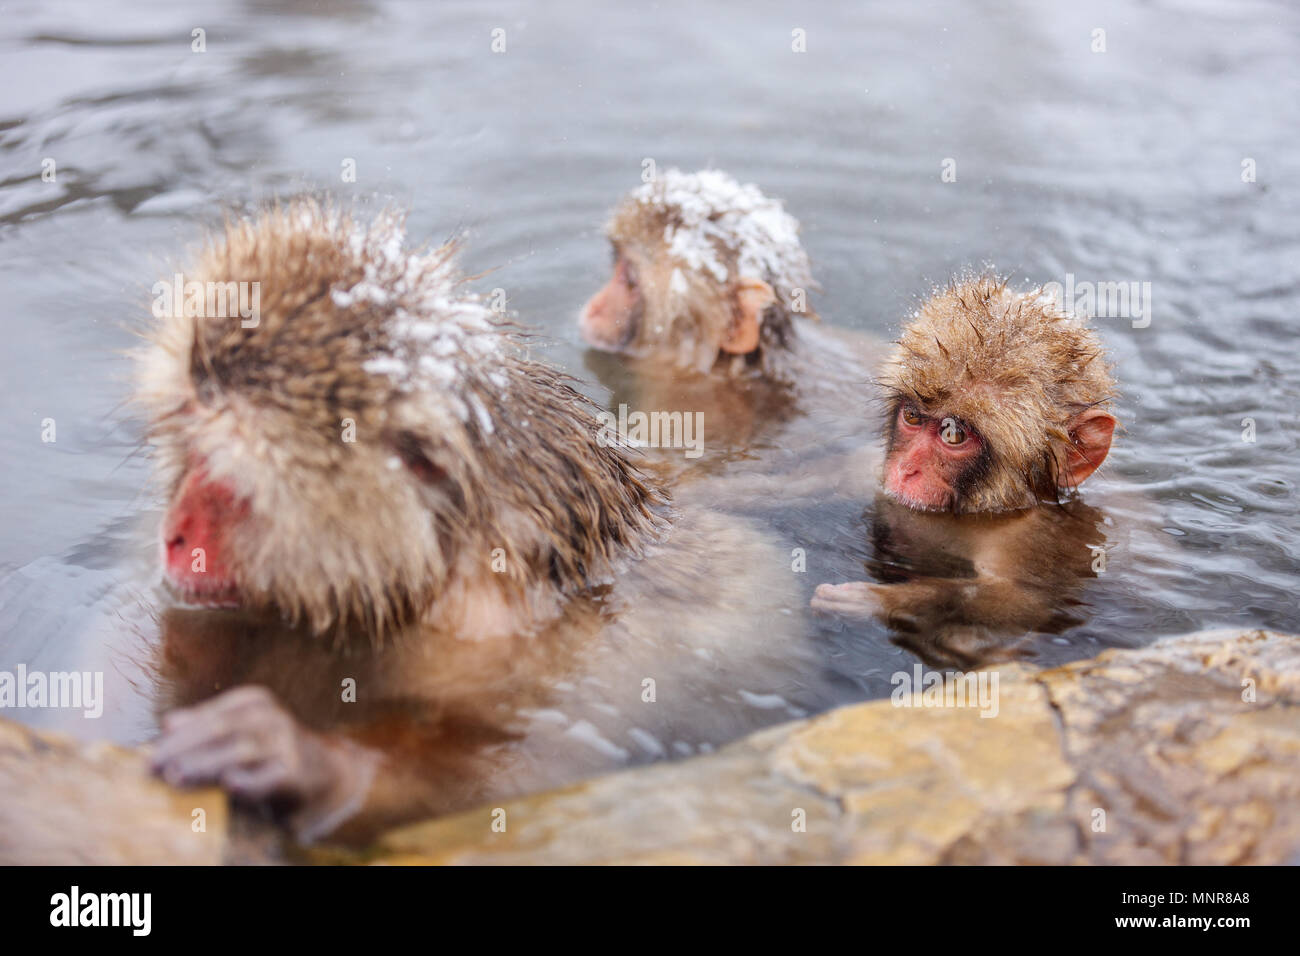 Обезьяна купается в теплой воде группа. Купание обезьяны в теплой воде. Макаки моются. Онсэн обезьяны. Смешные обезьянки купаются.